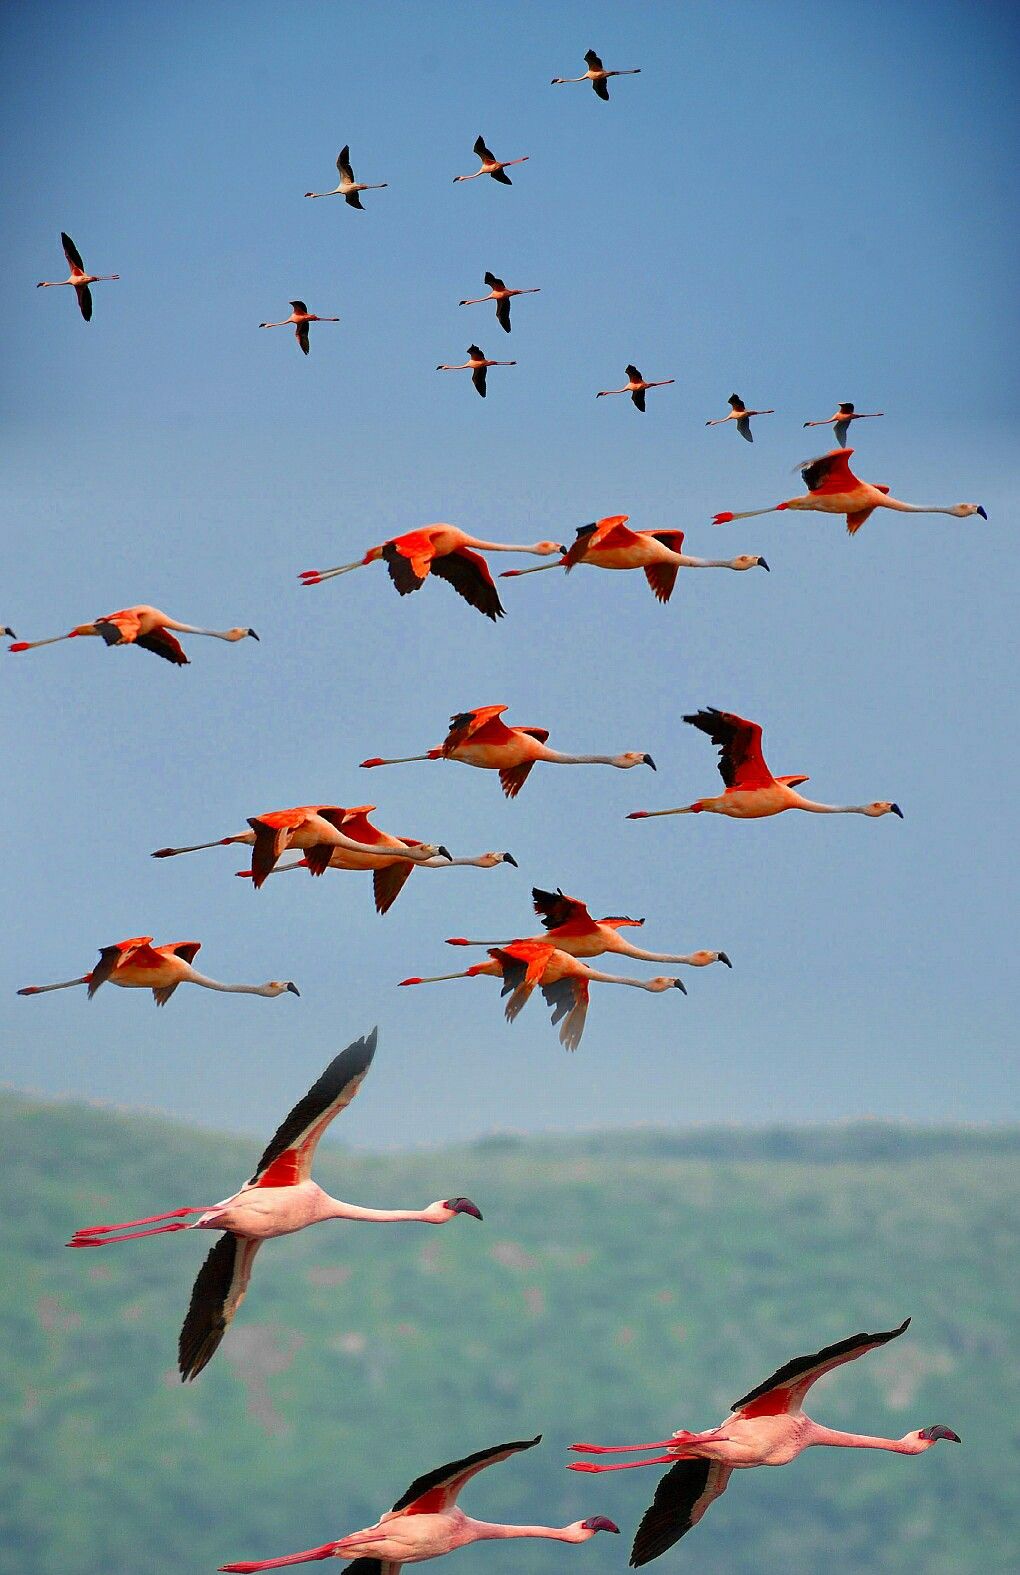 Фламинго обитают в основном в Африке, в Кении